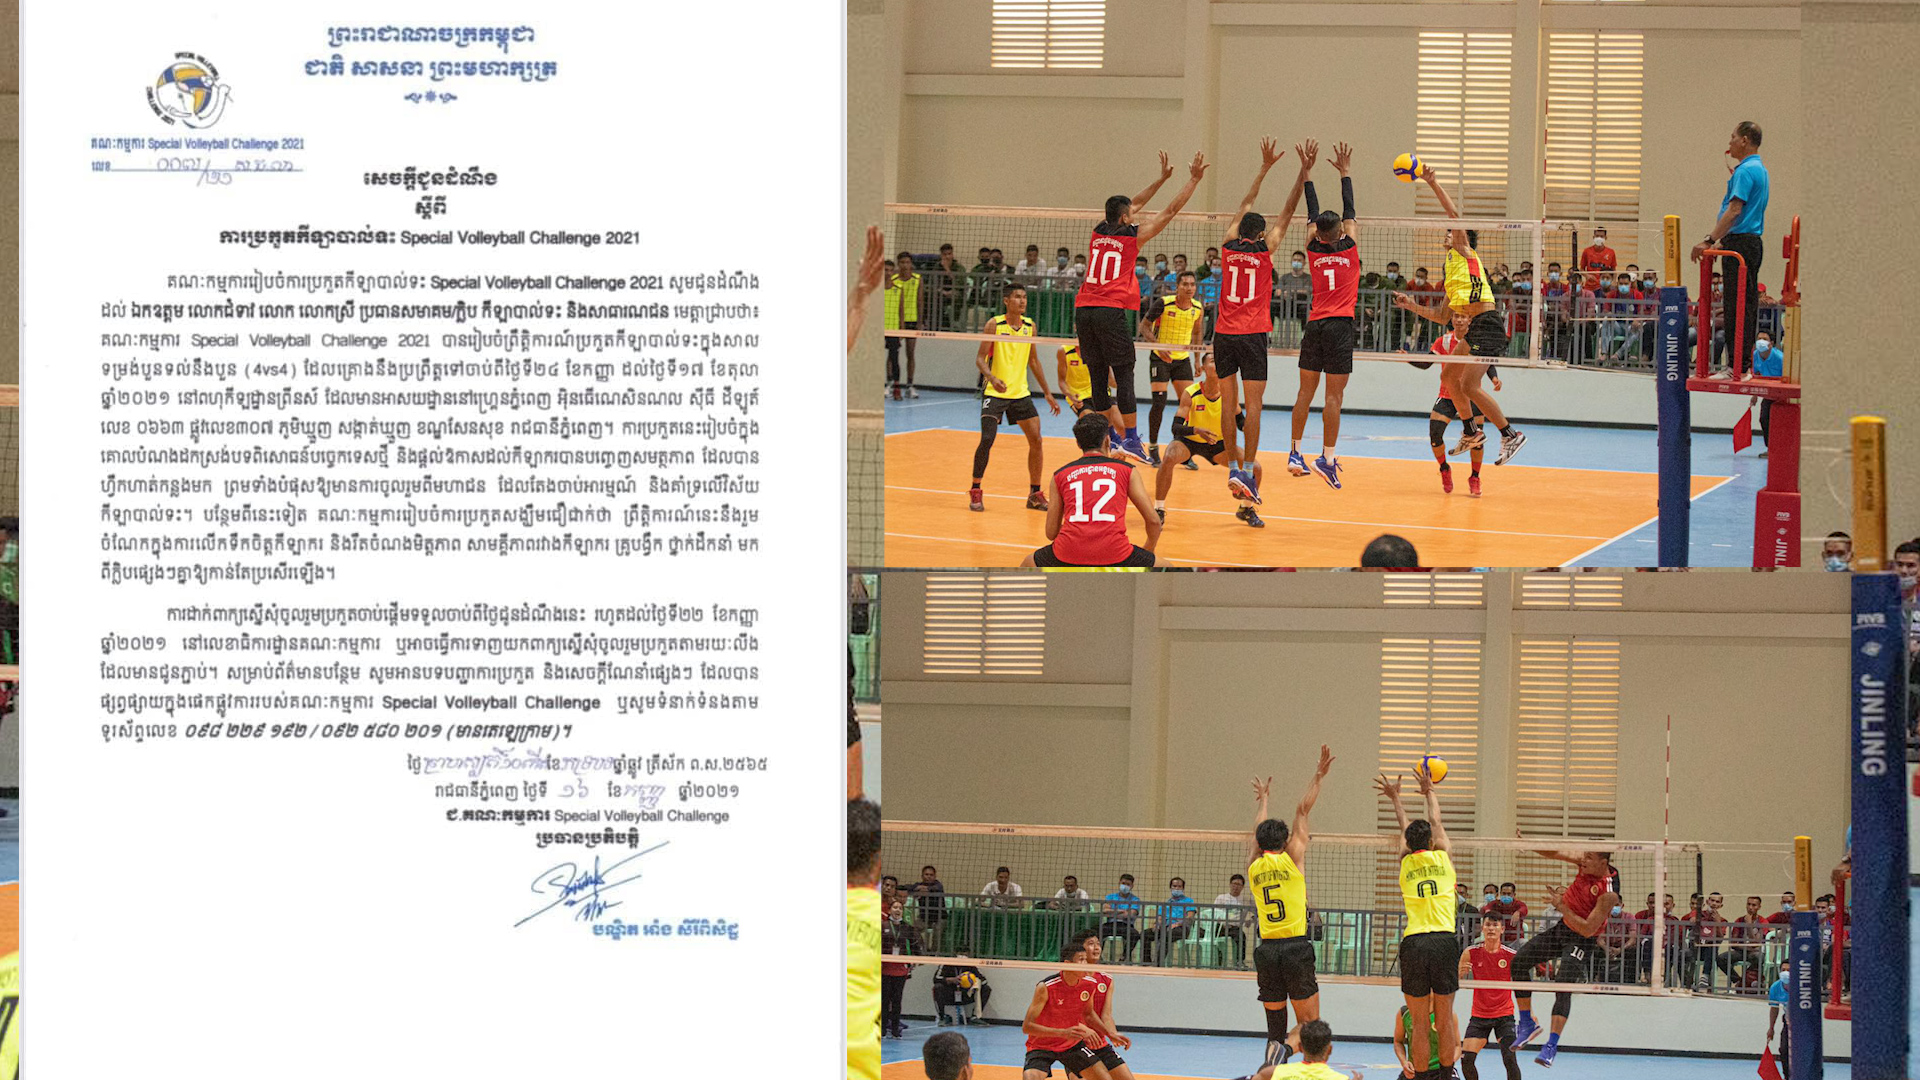 ព្រឹត្តិការណ៍ប្រកួតបាល់ទះ Special Volleyball Challenge 2021 បង្កើតឡើងដើម្បីជម្រុញចលនាគាំទ្របាល់ទះ នៅកម្ពុជា